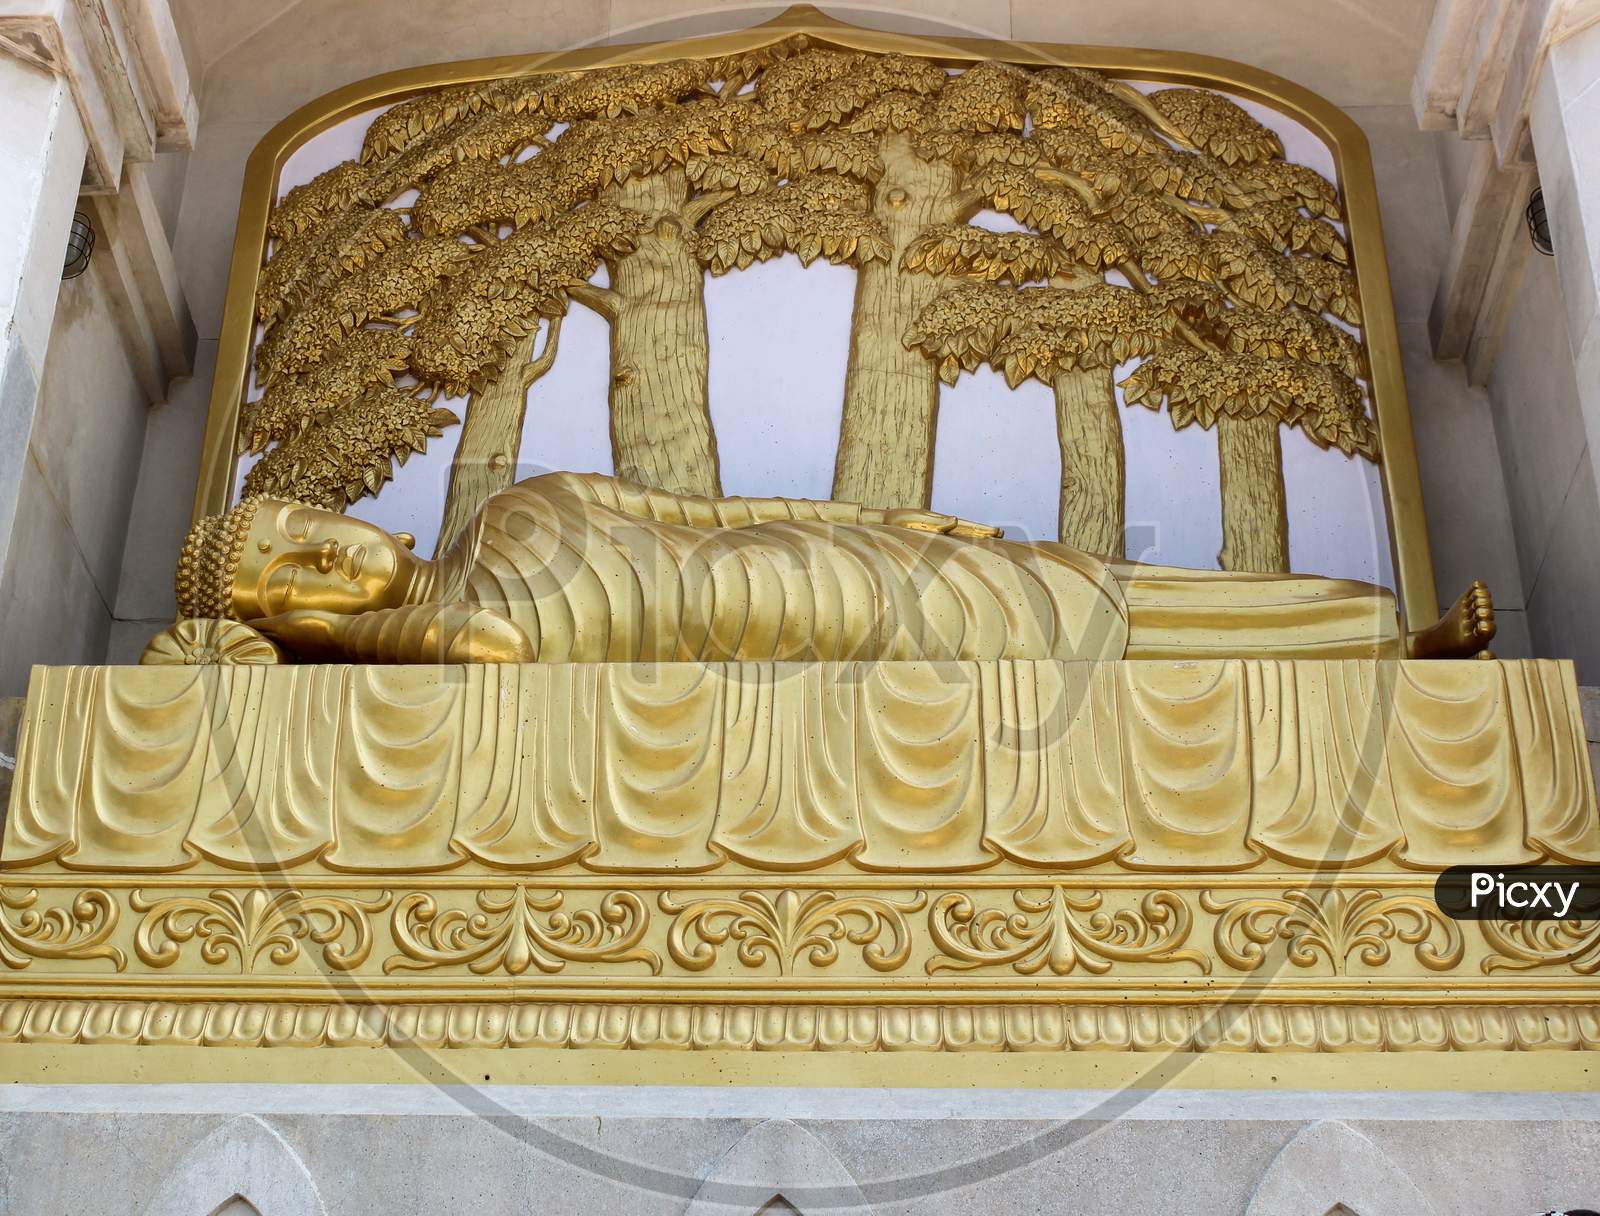 Sleeping Buddha in Rajgir/Bihar state of India.